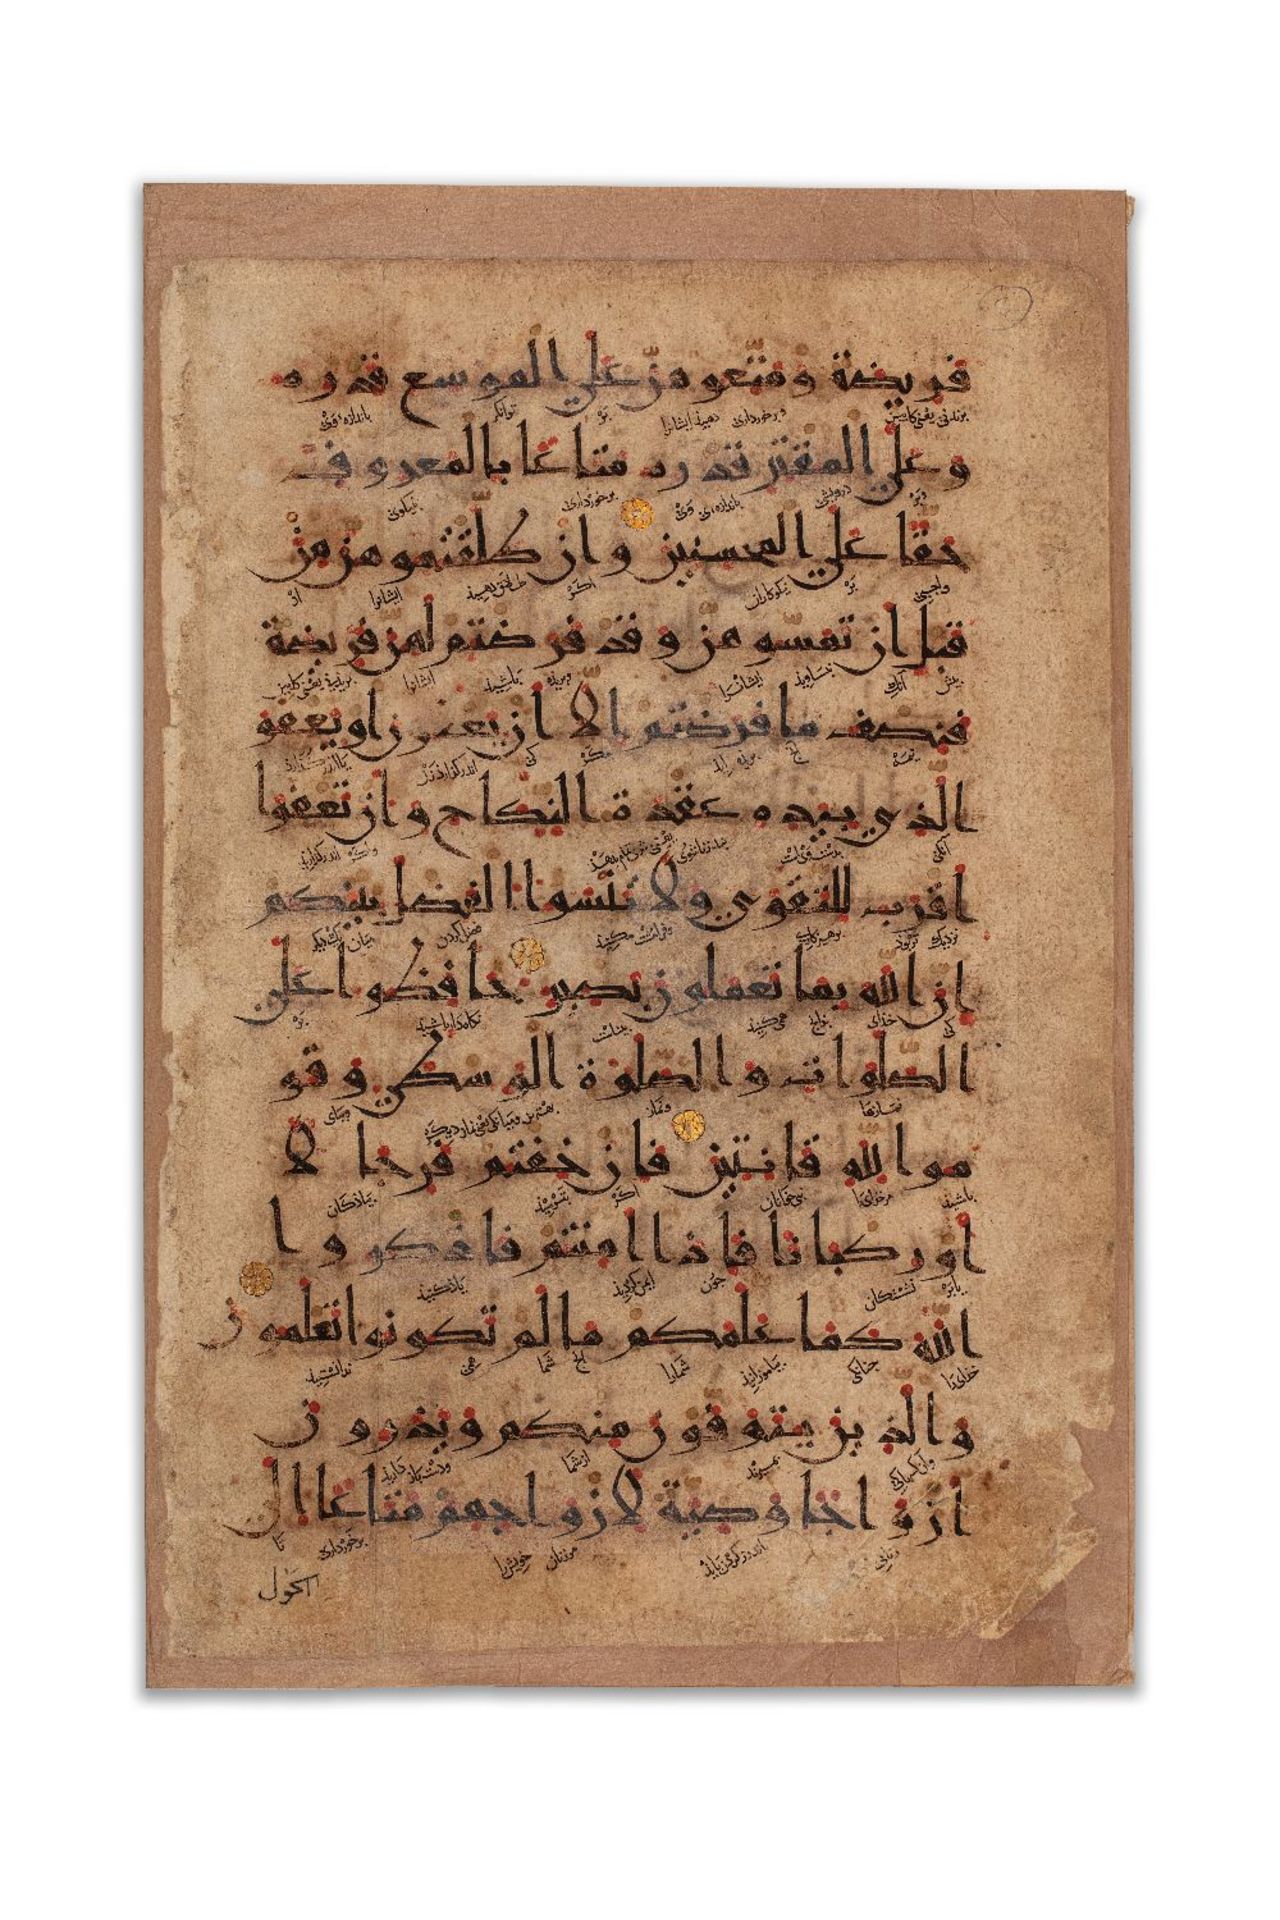 Deux bifolios de Coran ilkhanideIran, XIIe-XIIIe siècleManuscrit arabe sur papier épais, 4